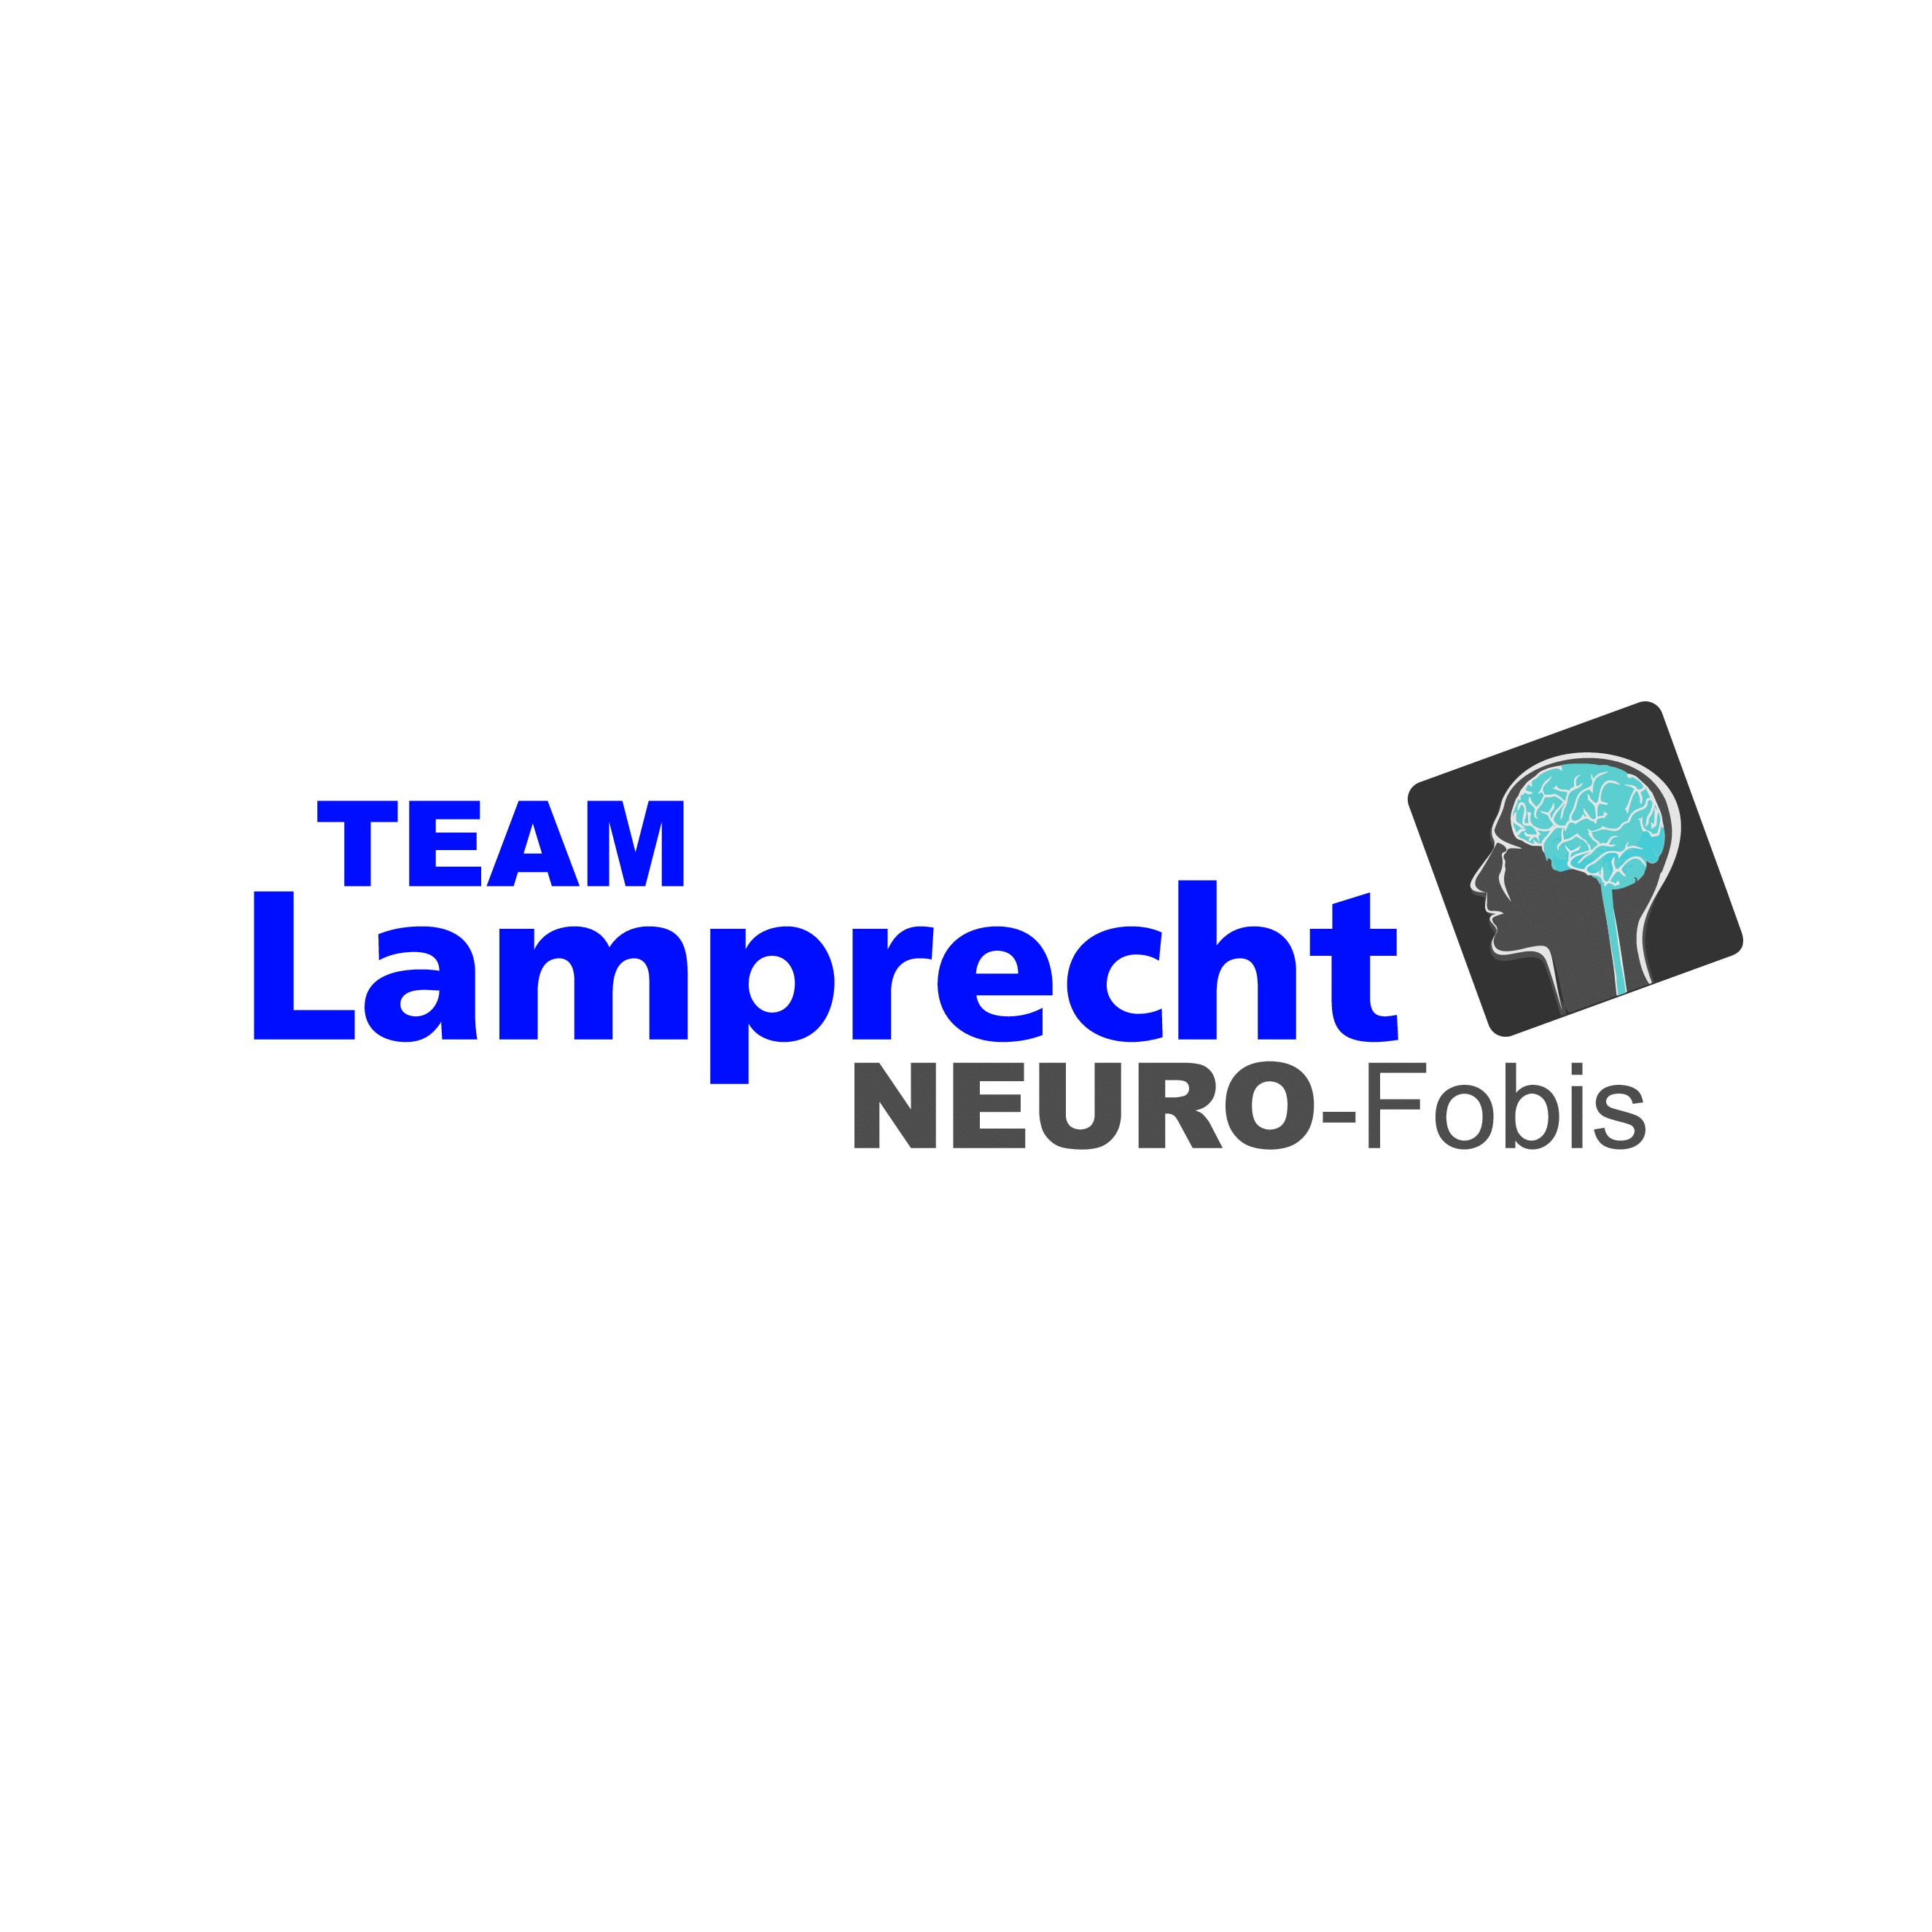 Team Lamprecht NEURO-Fobis